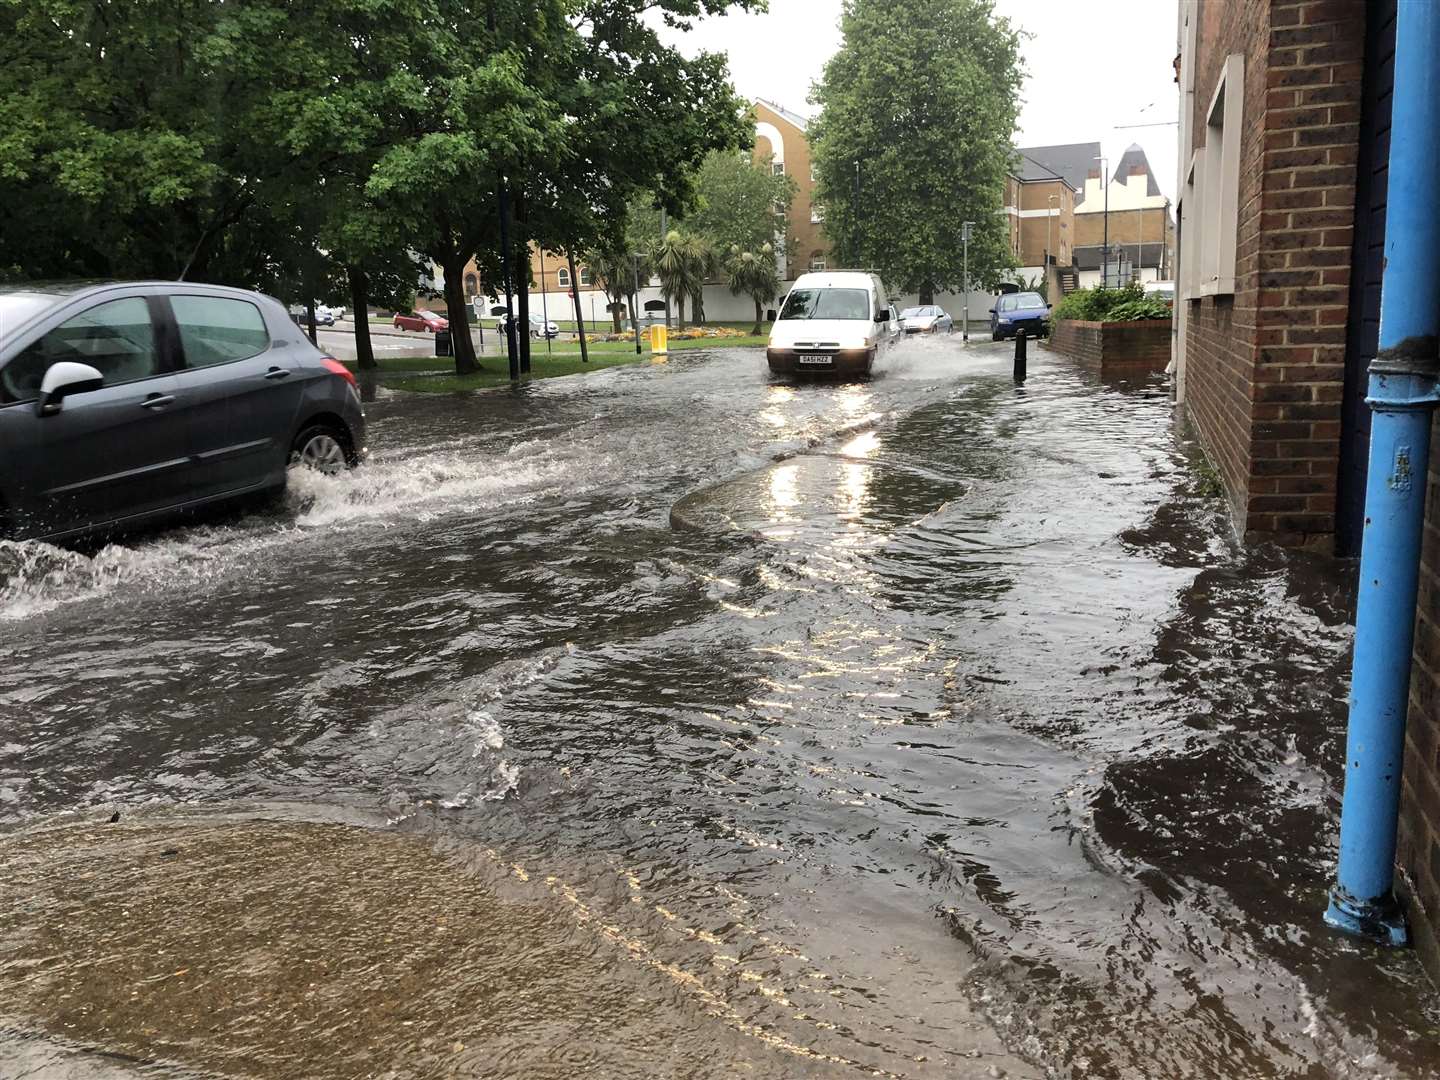 Flooding around Gravesend town centre (2260438)